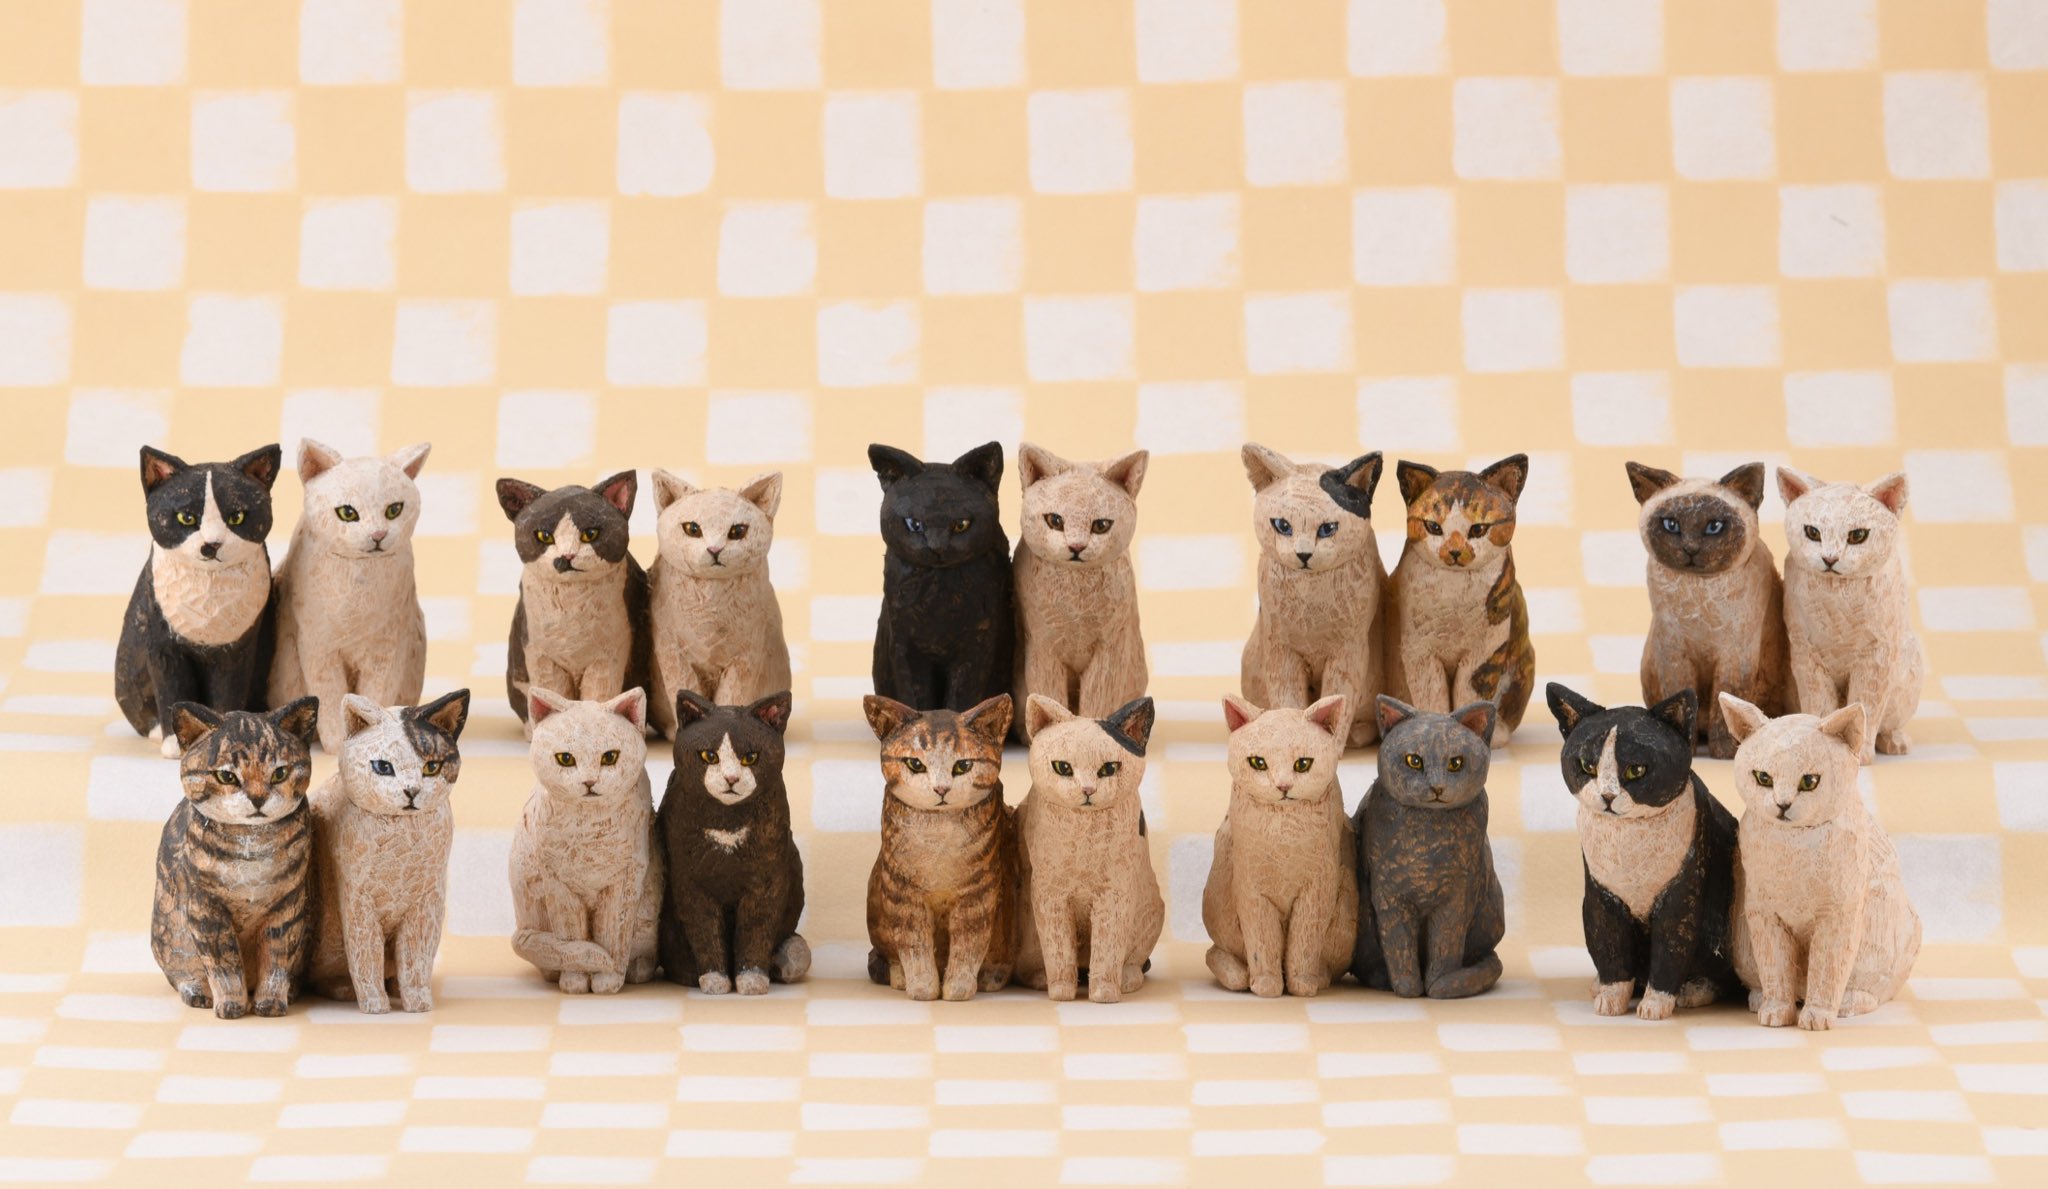 はしもとみお 木彫りの猫たち 猫の日 T Co Ozrkurmovz Twitter